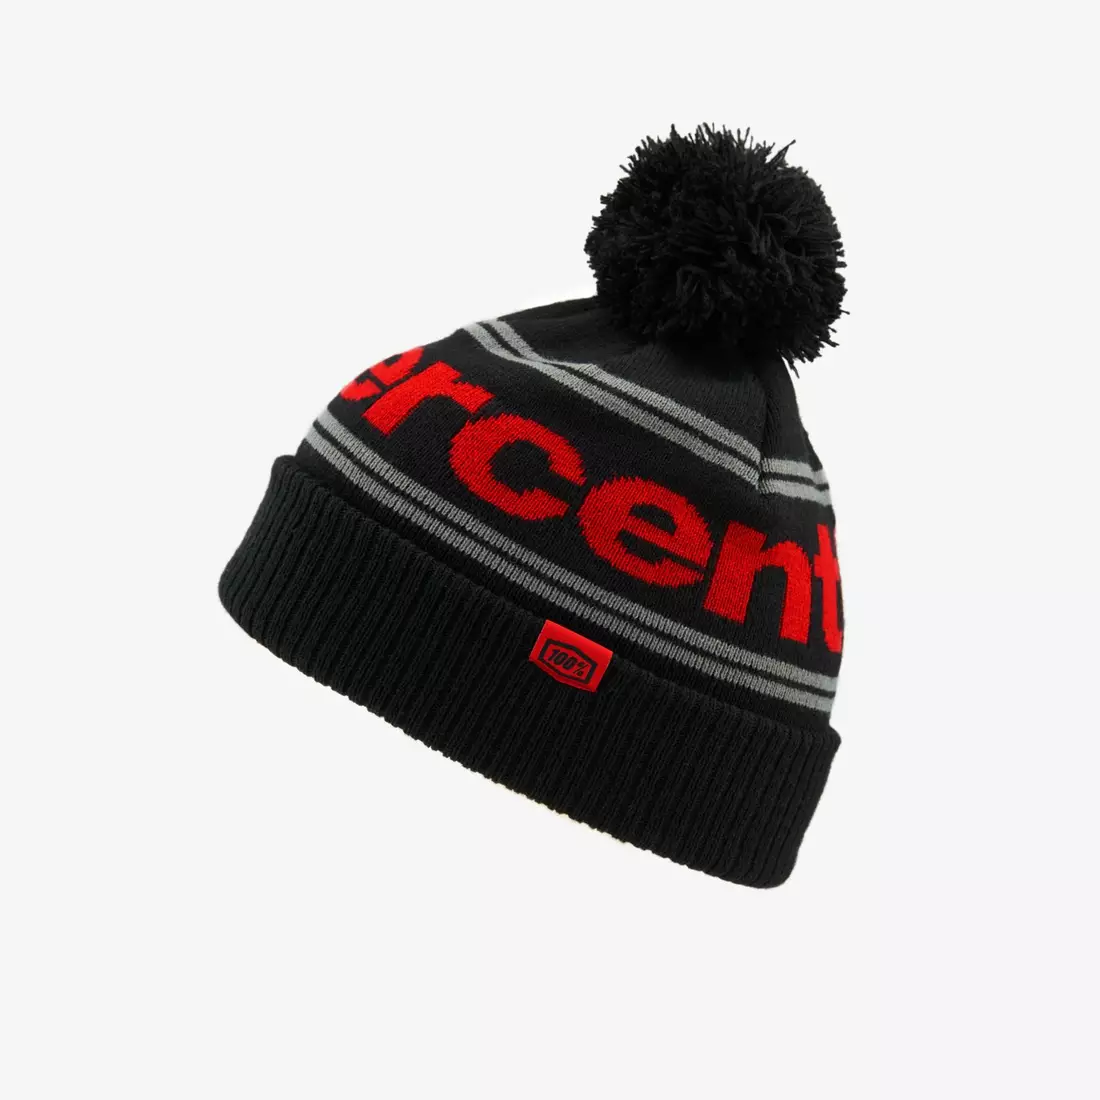 100% pălărie de iarnă cu pompon RISE Cuff Beanie w/Pom Pom black-red STO-20122-013-01